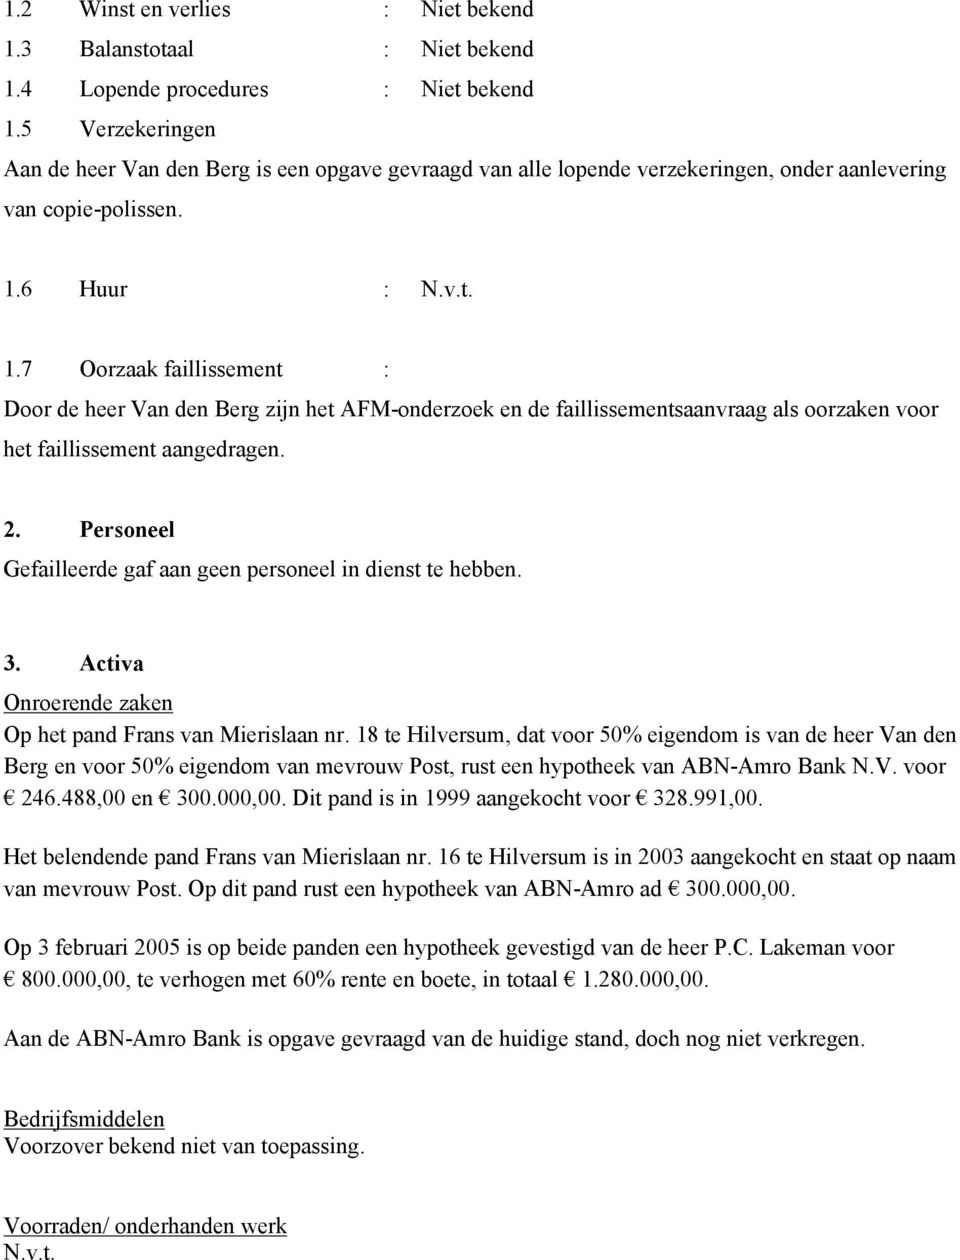 6 Huur : N.v.t. 1.7 Oorzaak faillissement : Door de heer Van den Berg zijn het AFM-onderzoek en de faillissementsaanvraag als oorzaken voor het faillissement aangedragen. 2.